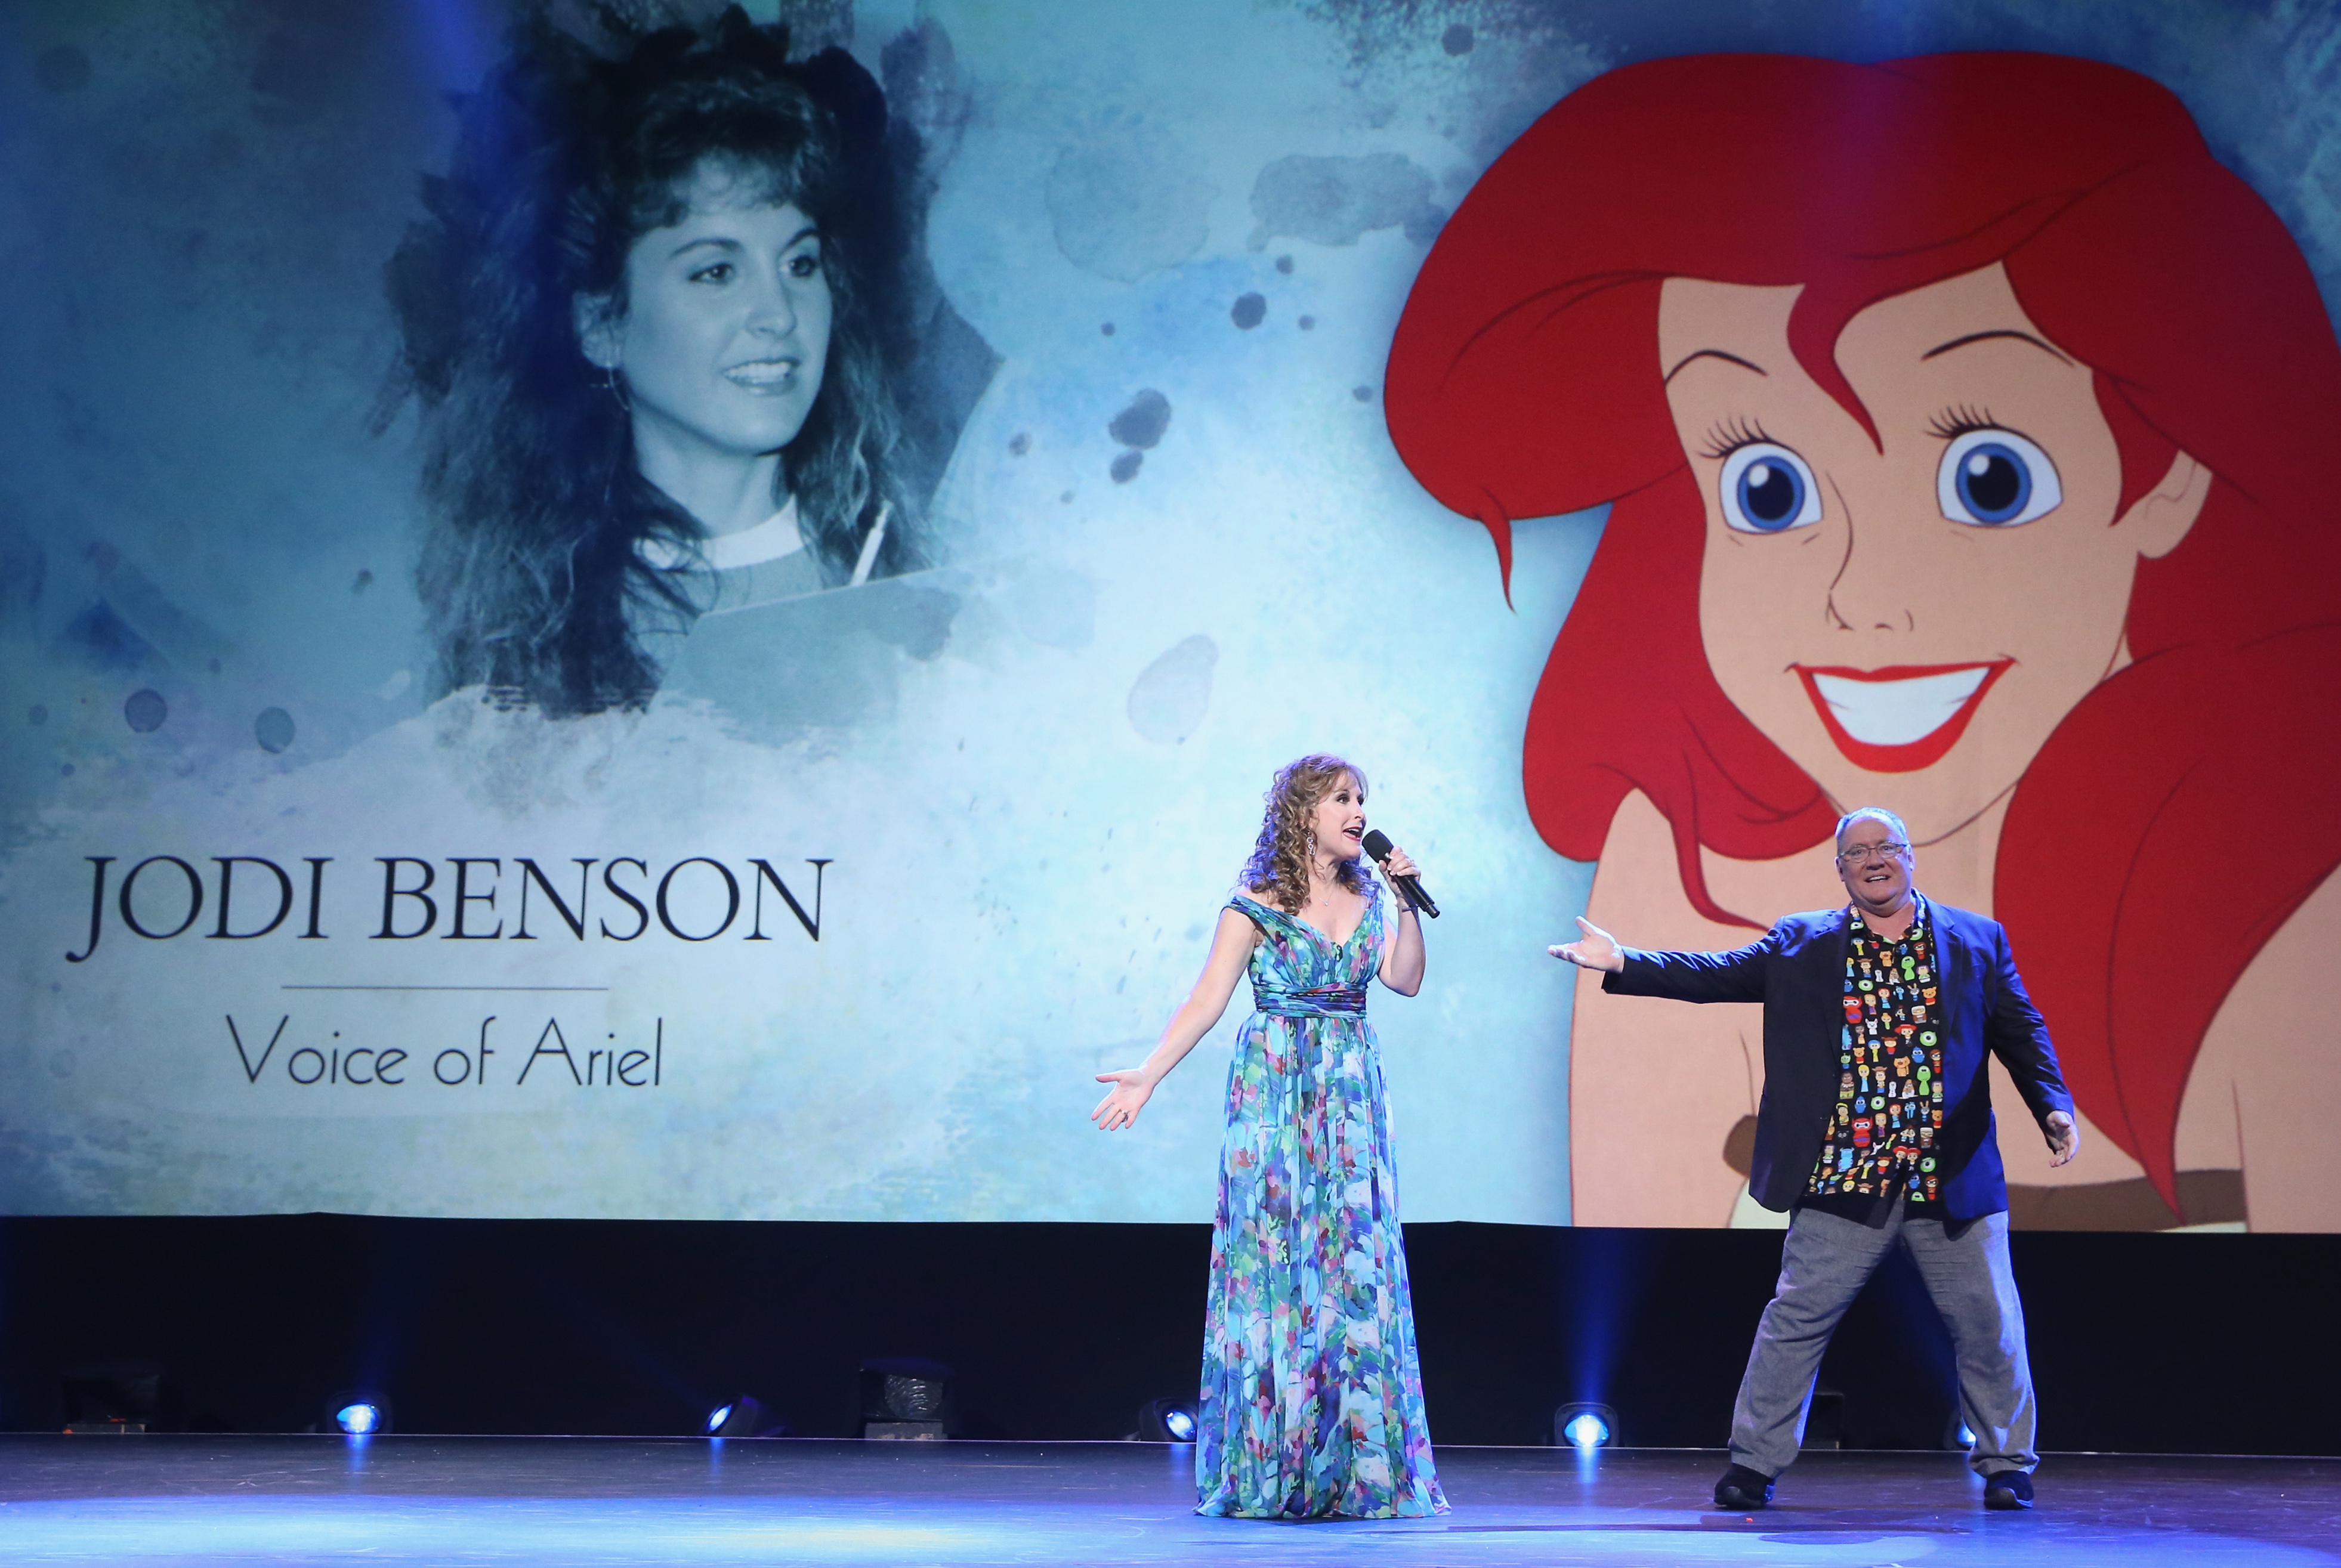 Jodi Benson, la voz de Ariel de "La Sirenita" (The Little Mermaid) con John Lasseter.